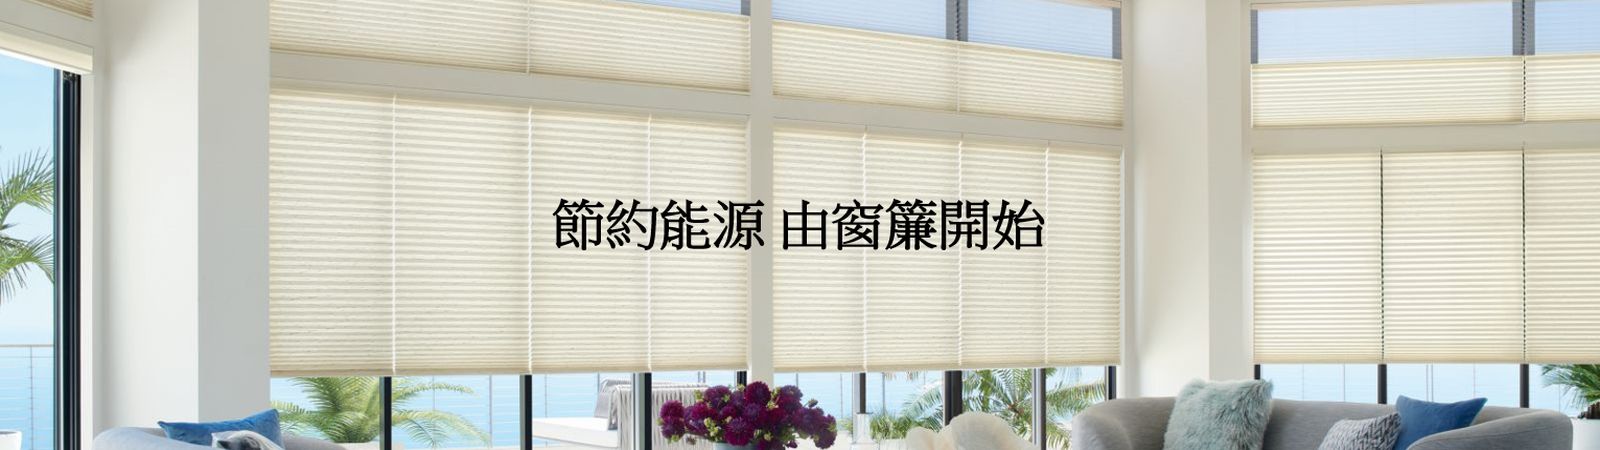 energy efficiency banner4.jpg